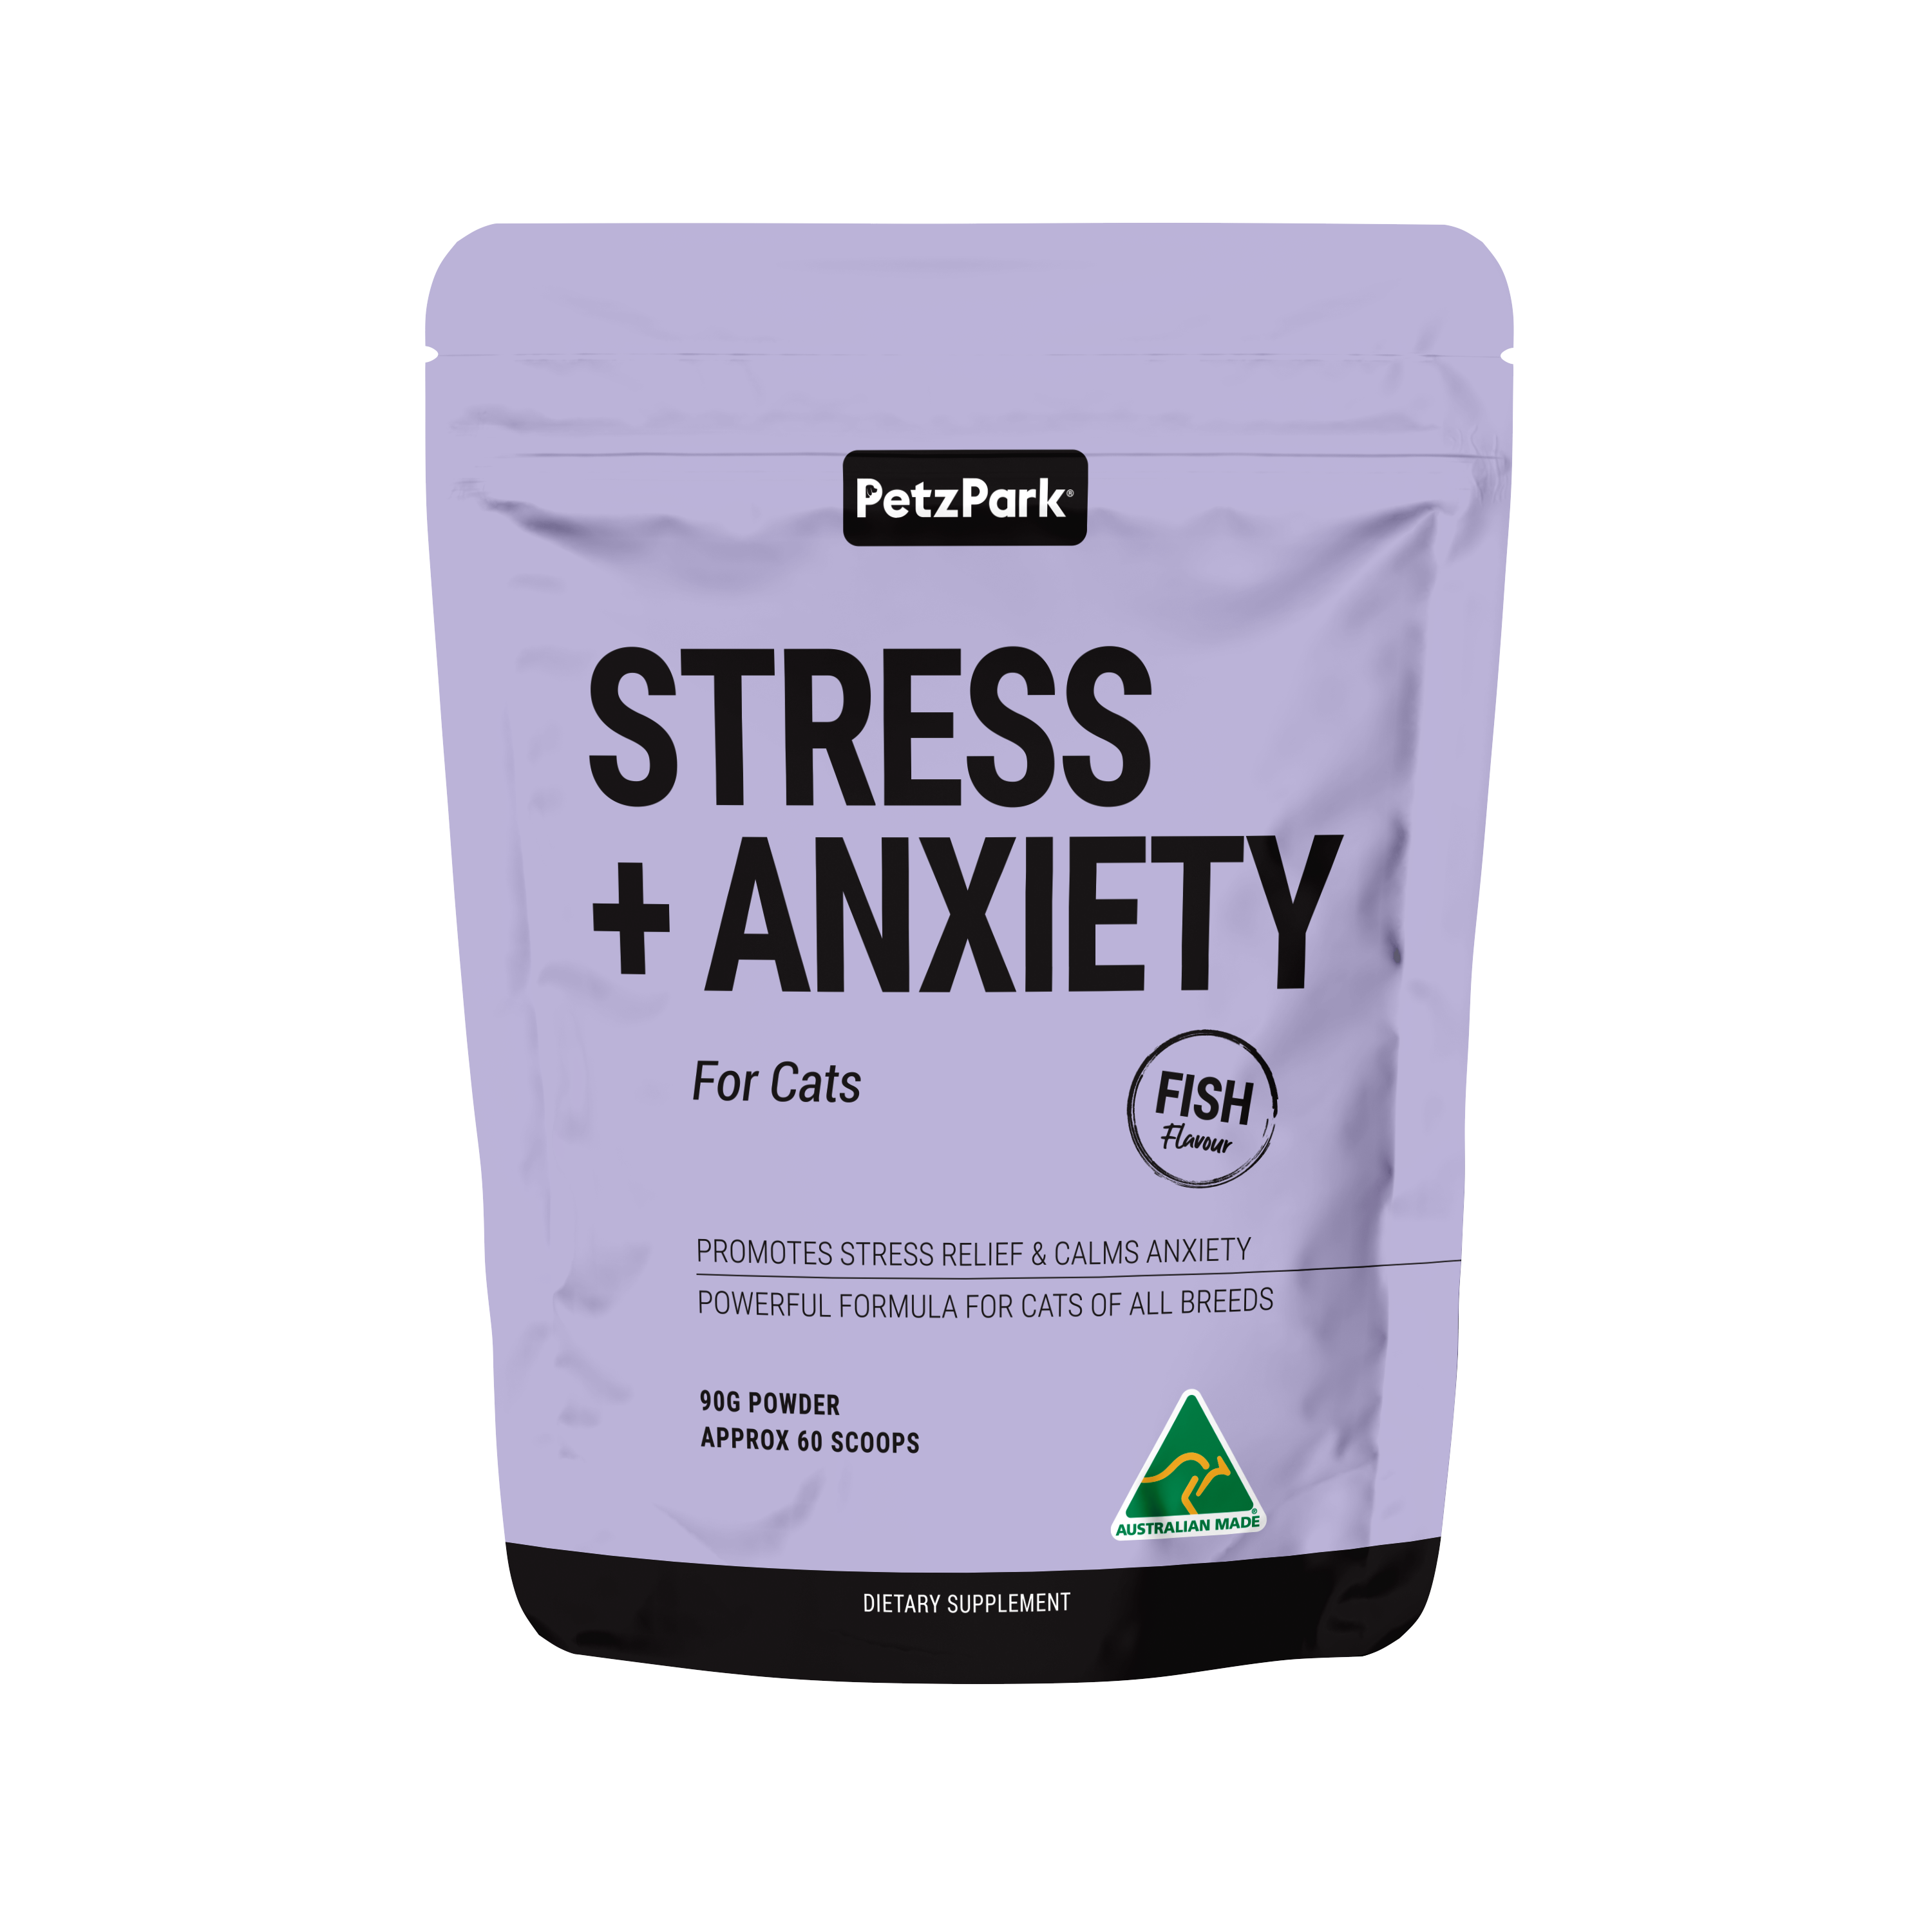 Petz Park Stress + Anxiety for Cats poudre, herbe à chat, camomille et plus pour calmer l'anxiété et un sommeil réparateur